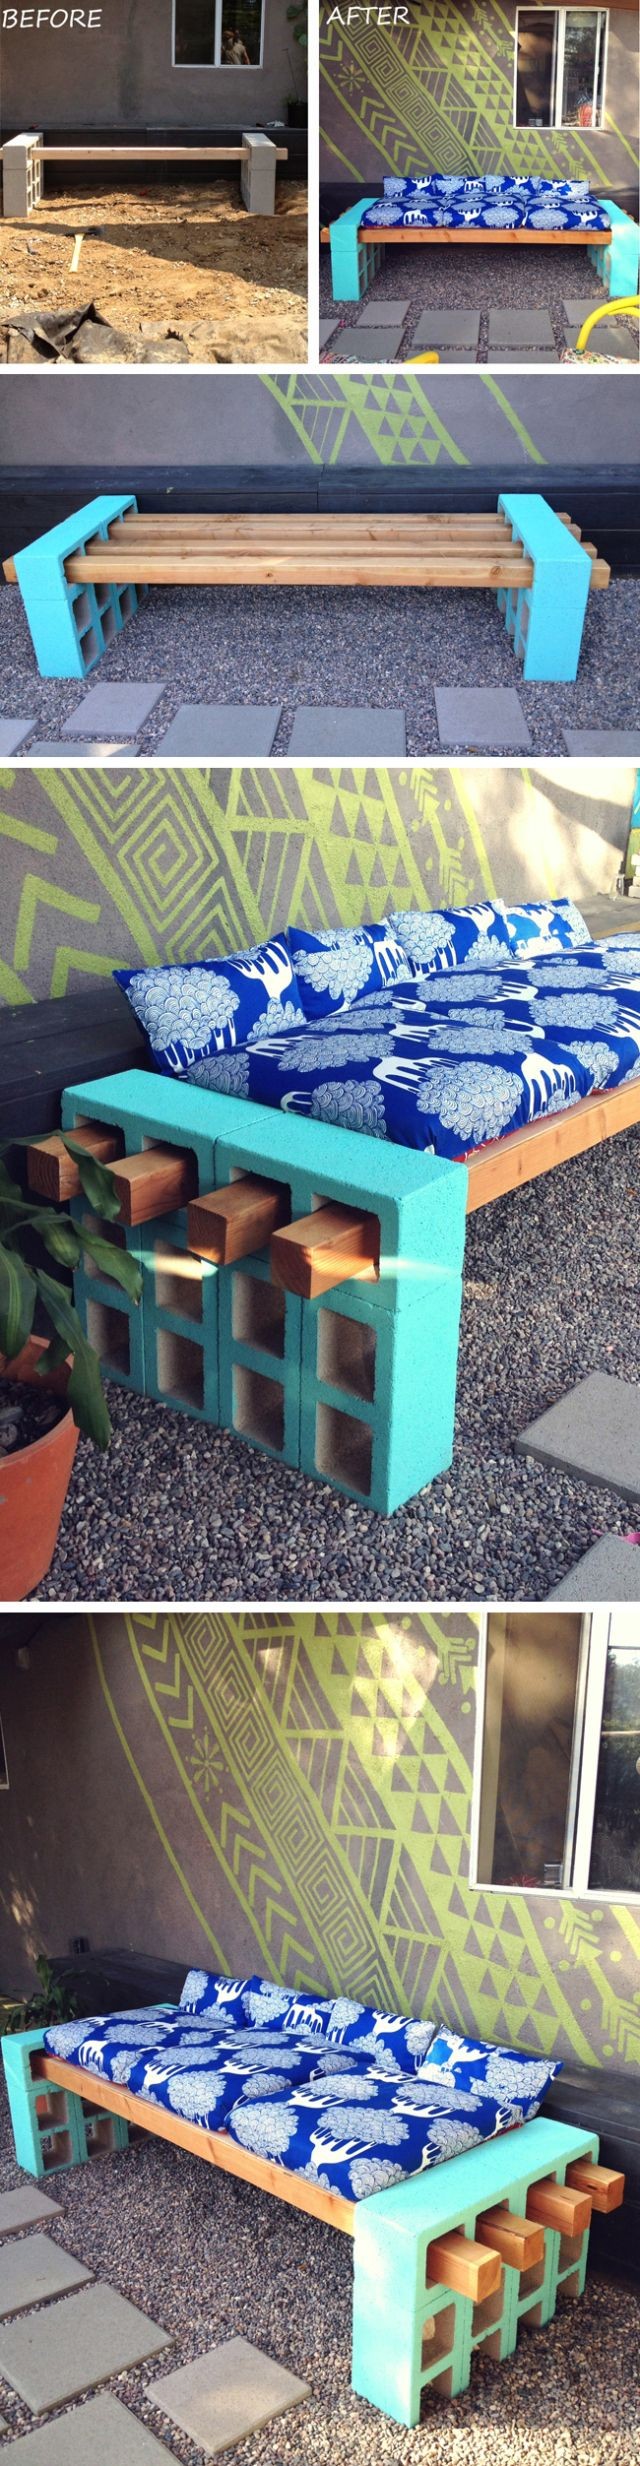 DIY concrete block bench seating | furniture desig...